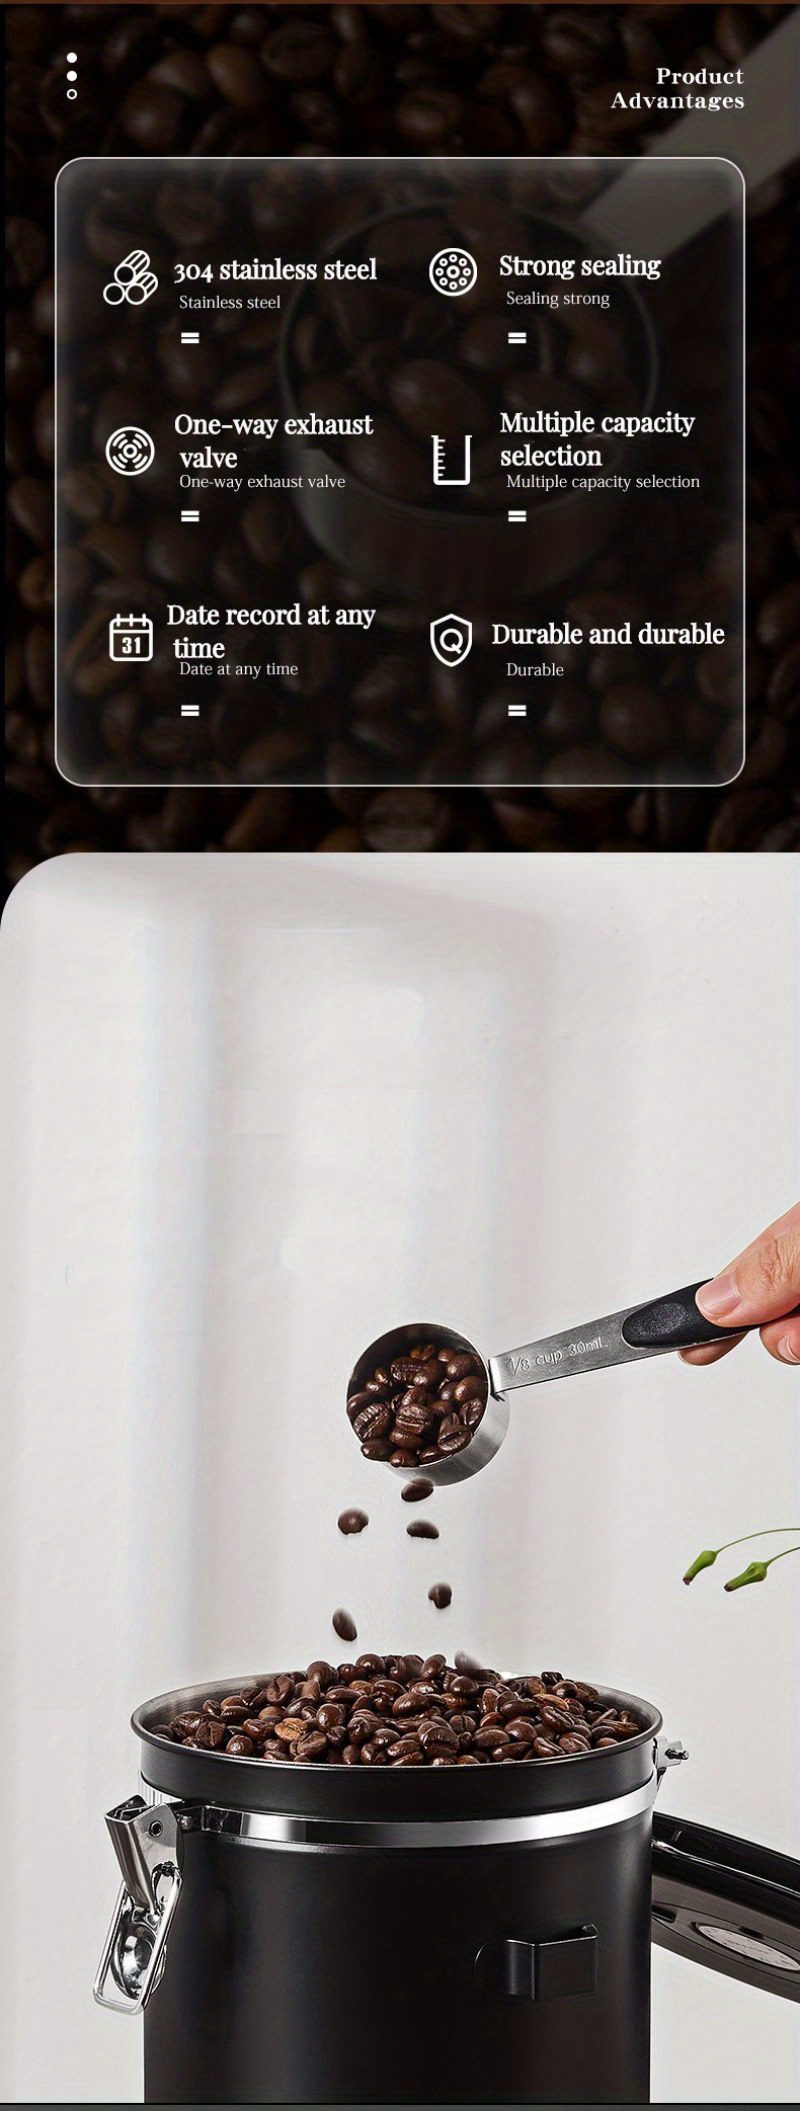 Edelstahl Luftdichter Kaffeebehälter Aufbewahrungskanister Set Kaffeeglas  Kanister mit Schaufel für Kaffeebohnen Tee 1,8l